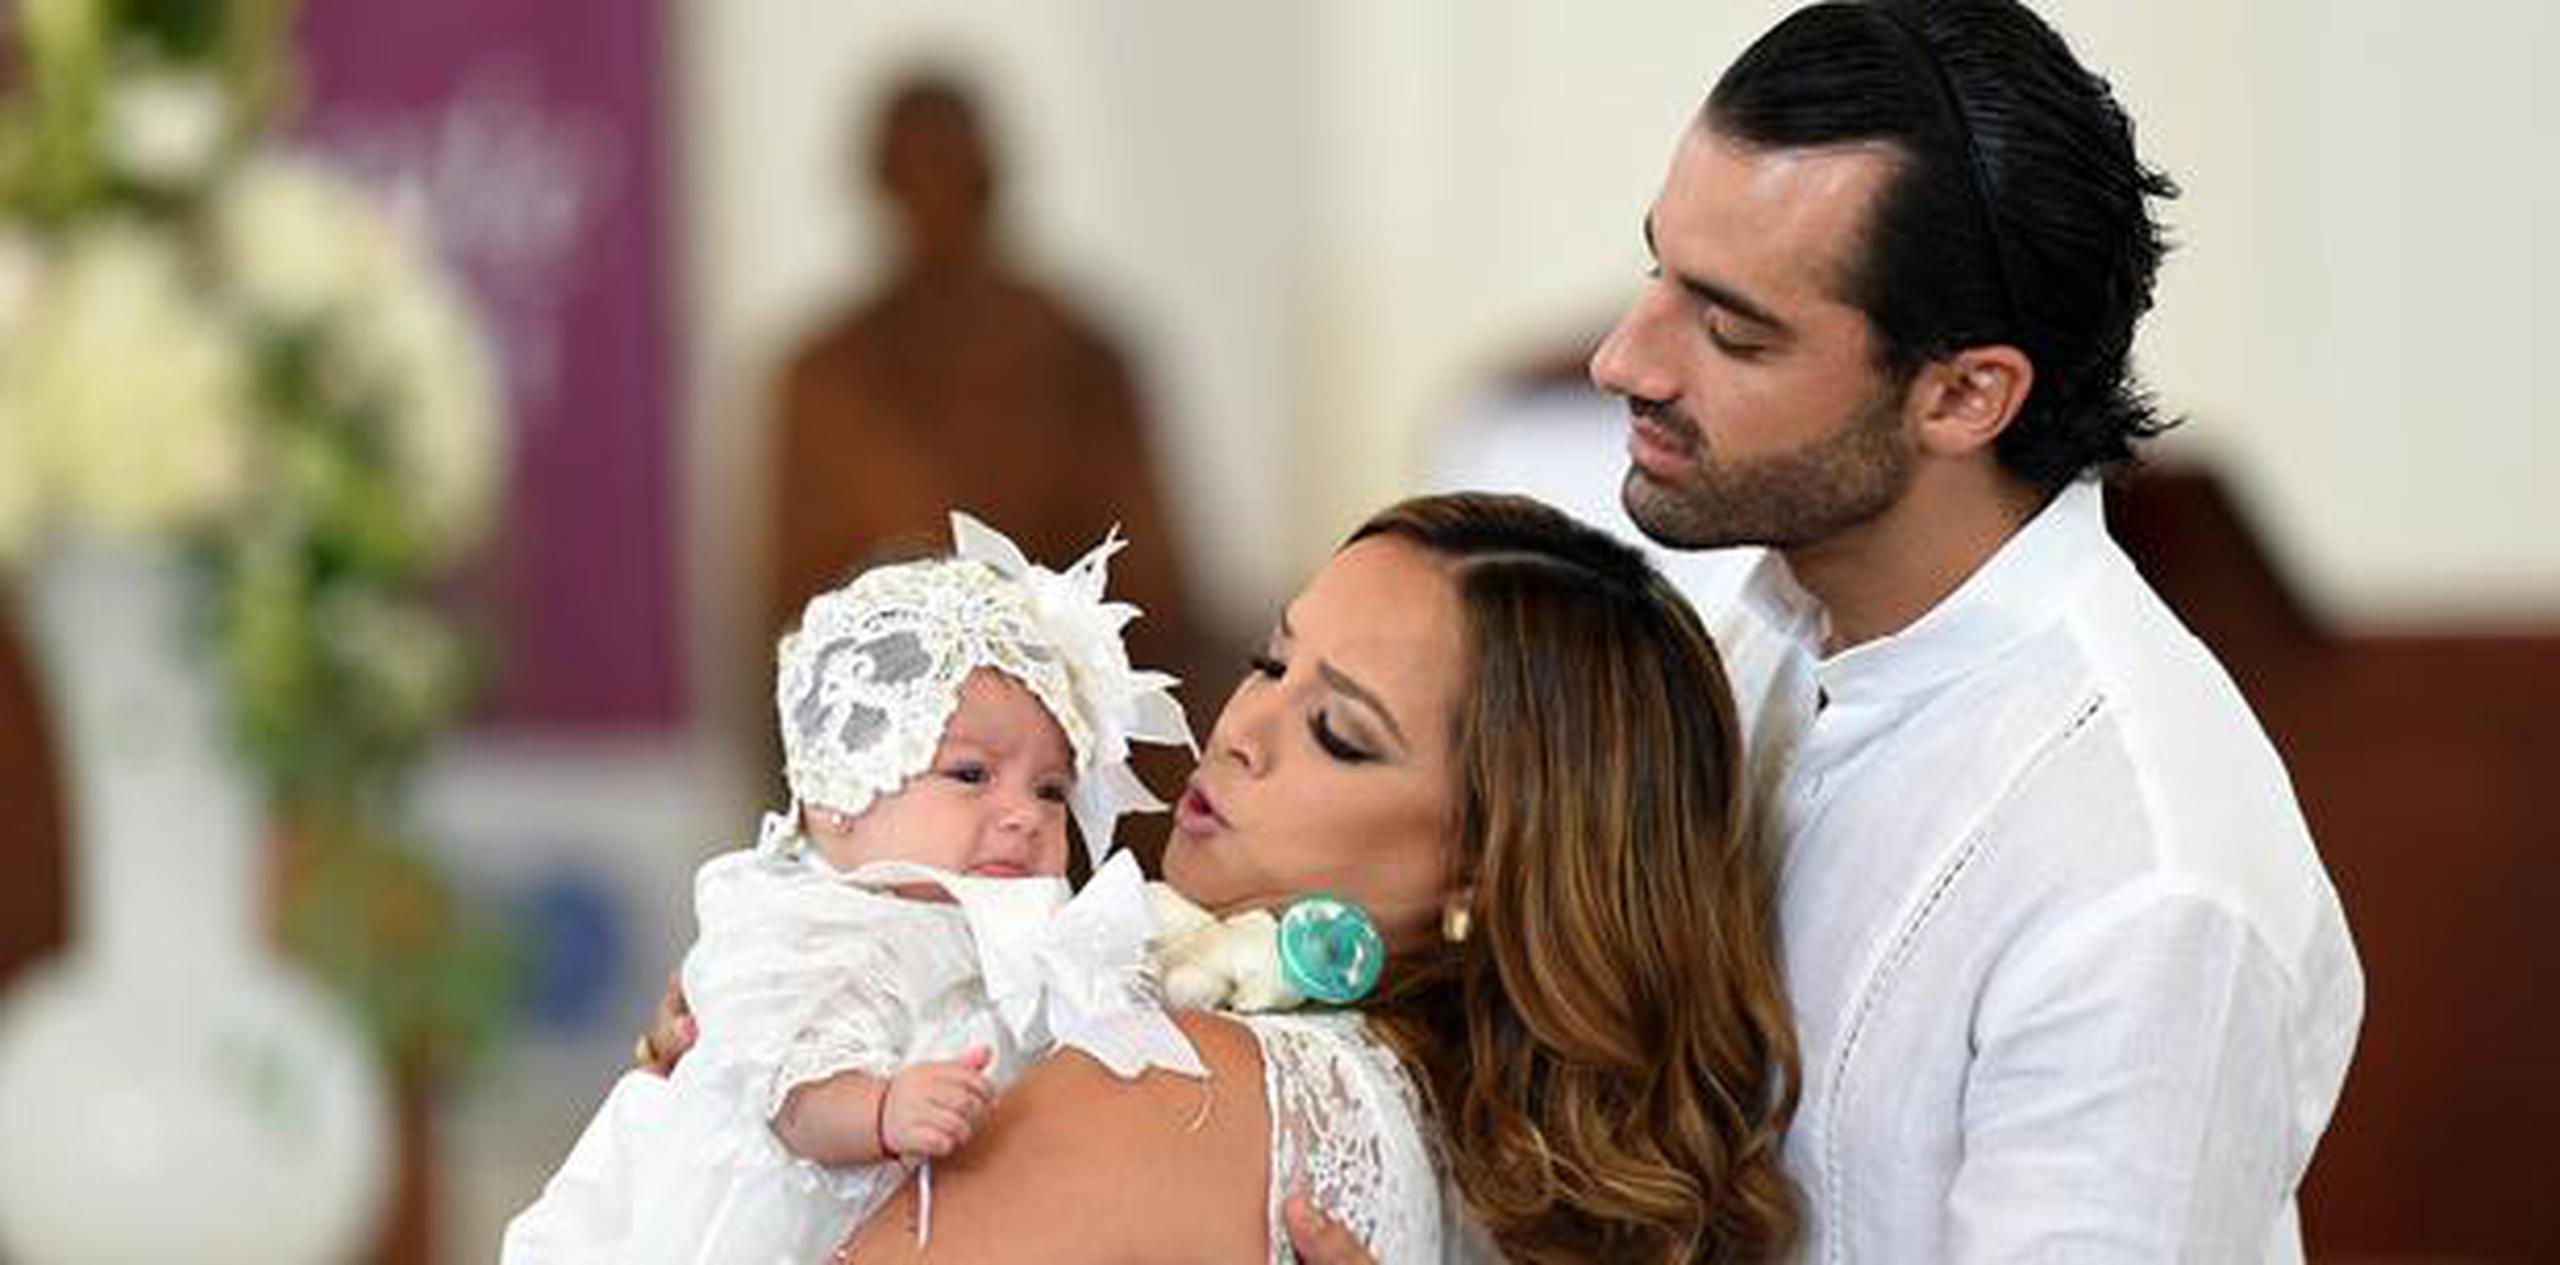 López reencontró el amor en el bailarín español Toni Costa, a quien conoció en 2011, y ahora es madre de Alaïa. (Archivo)